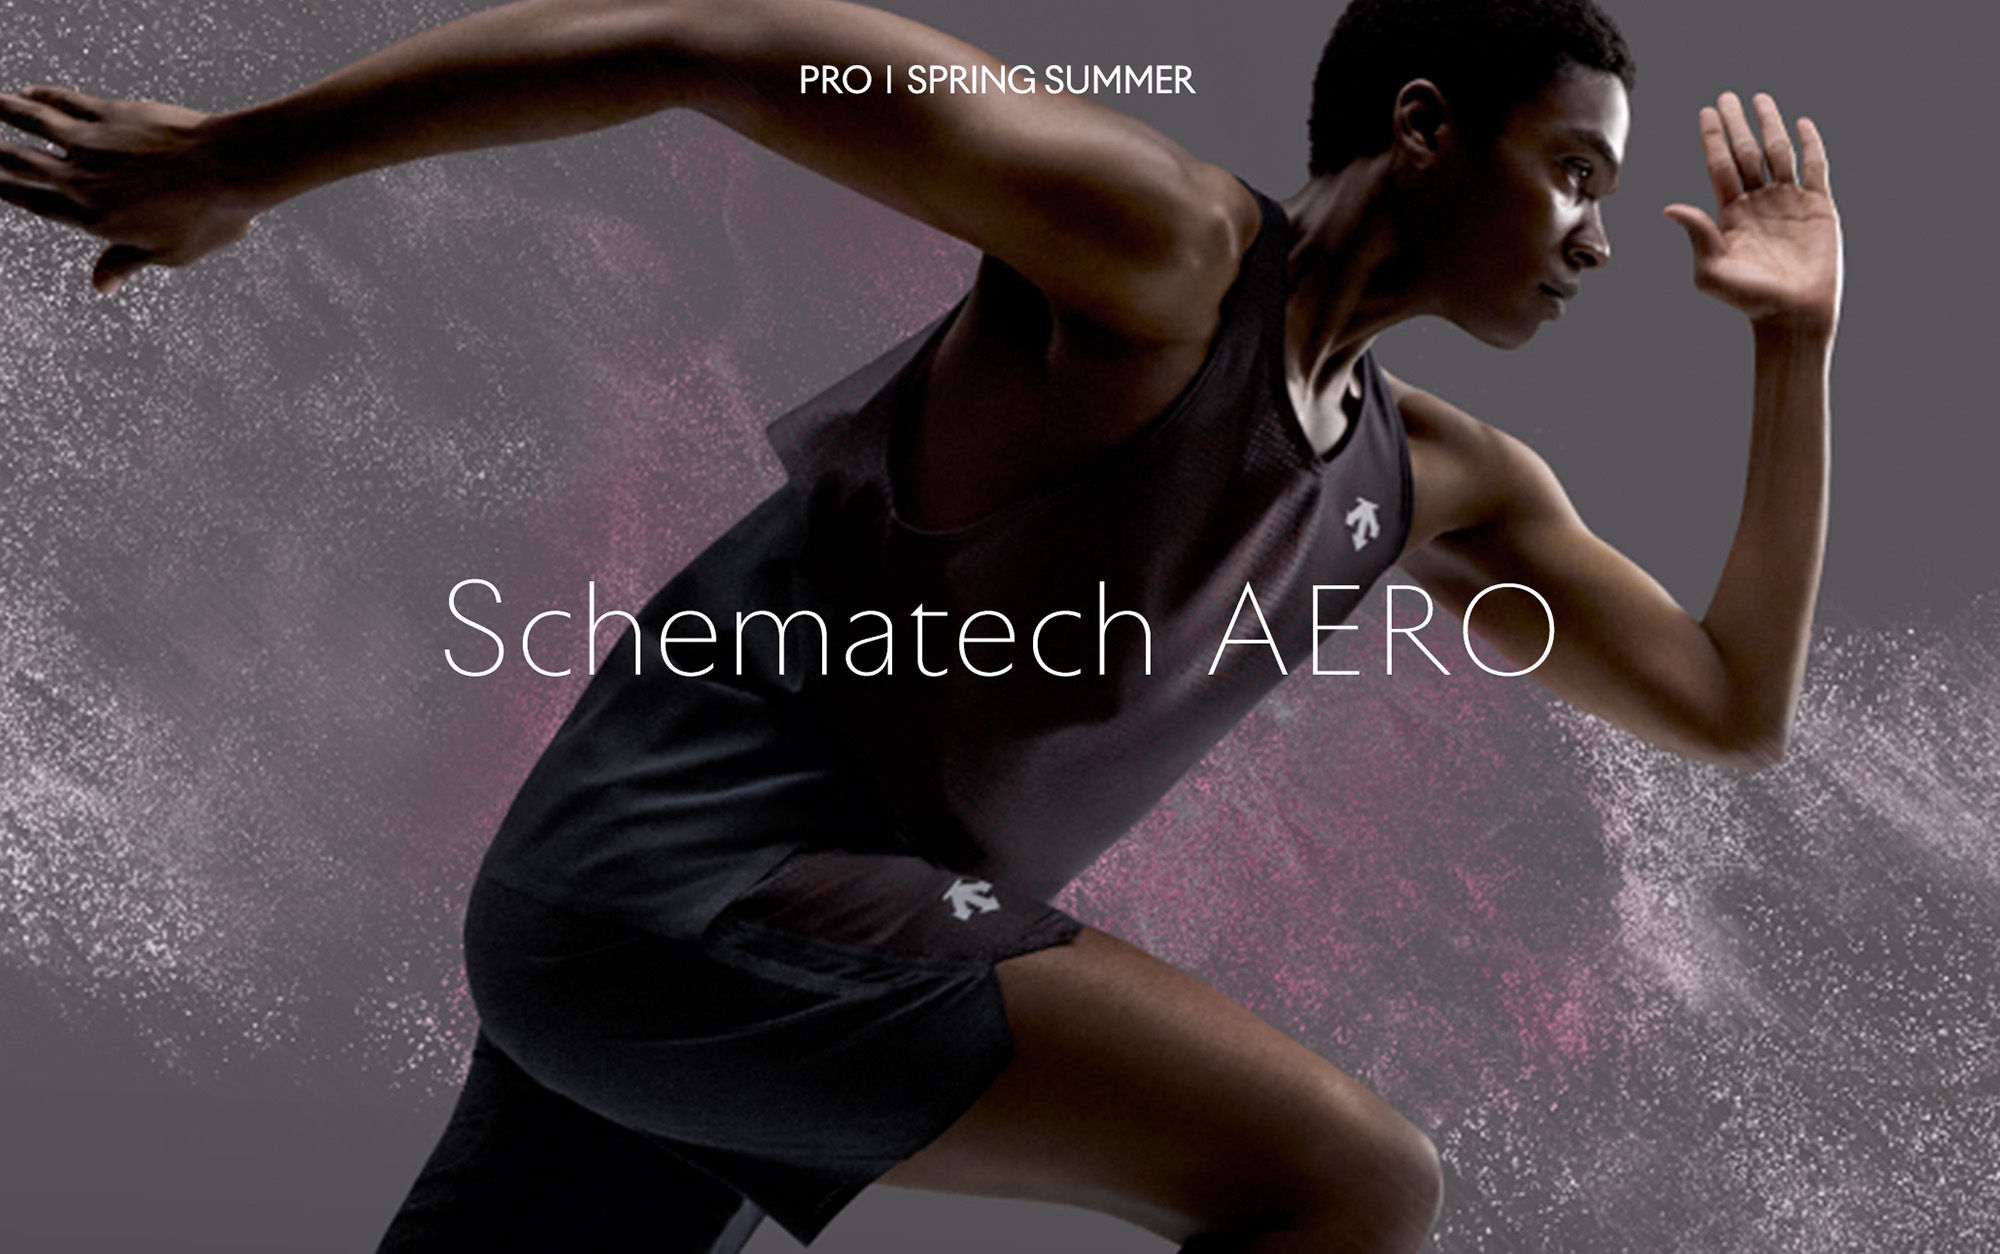 DESCENTEのプレミアムスポーツウェアカテゴリー「PRO」の春夏モデル第1弾、独自のベンチレーションを搭載した「Schematech AERO」シリーズが登場